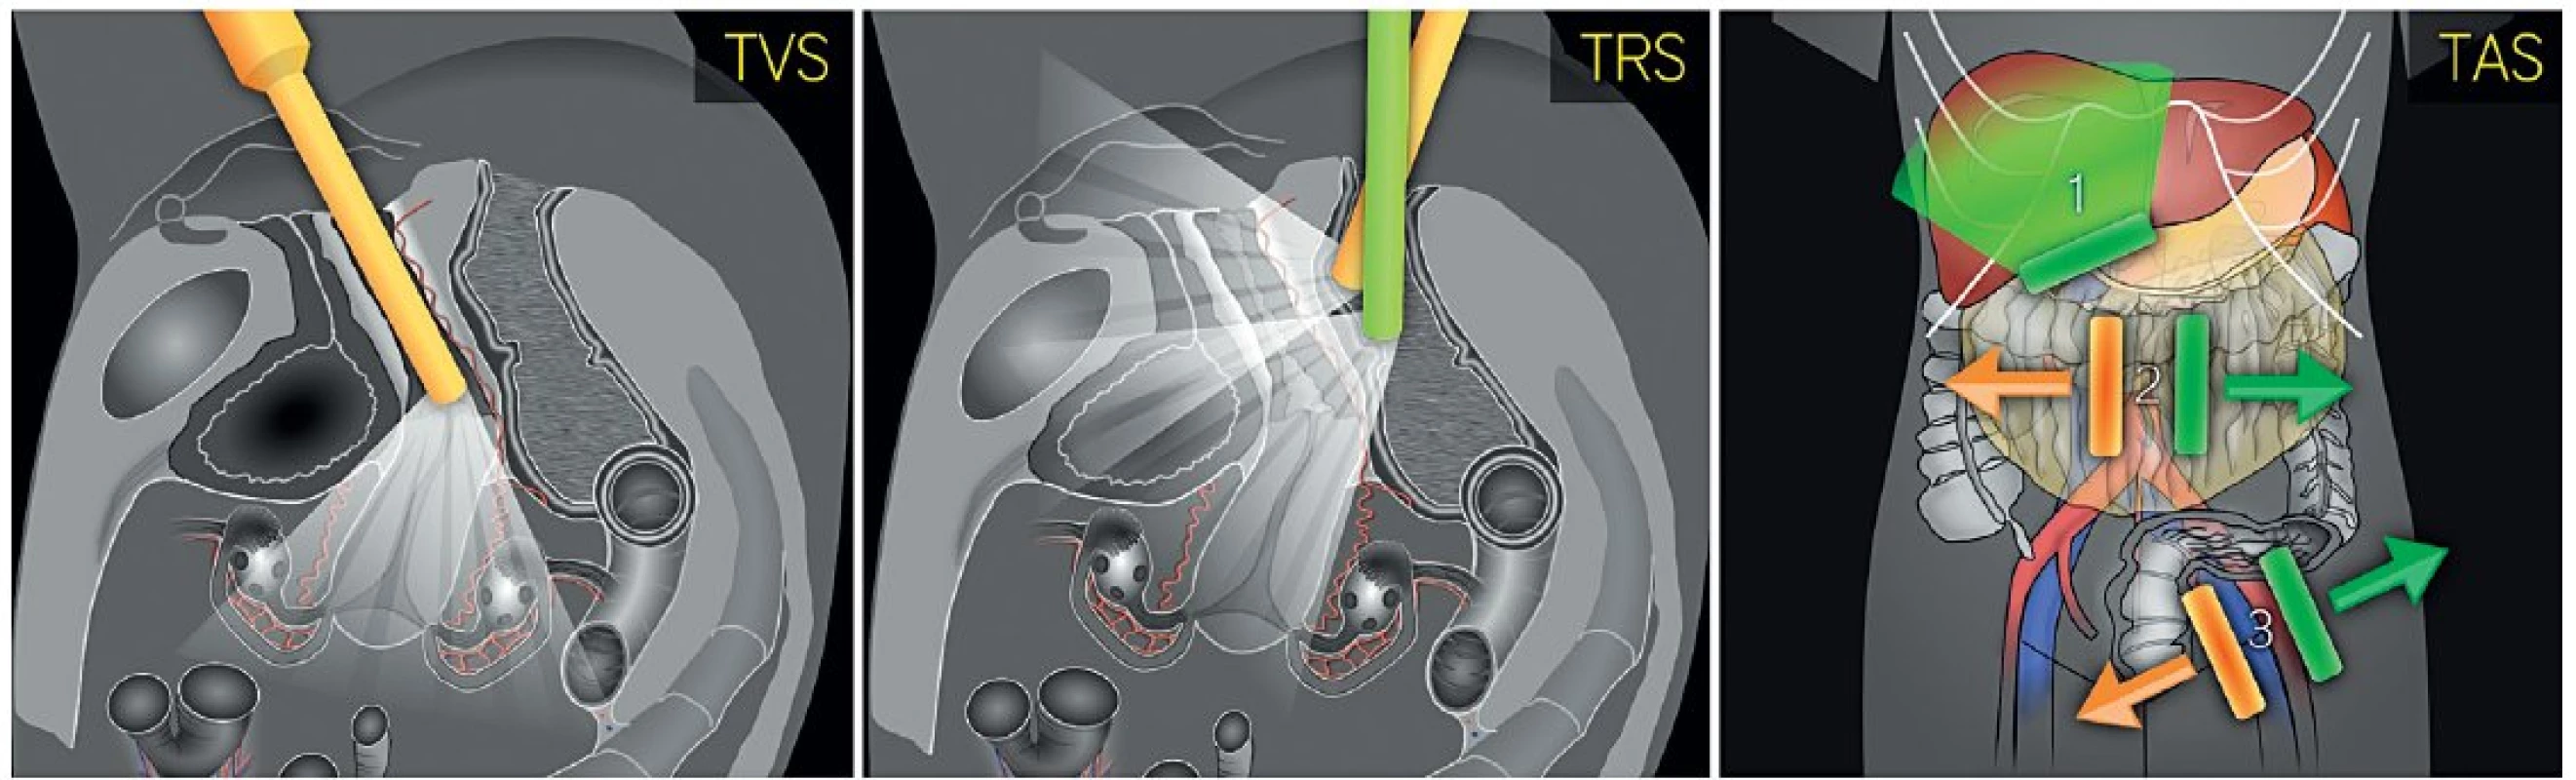 Postup ultrazvukového vyšetření při předoperačním screeningu endometriálního karcinomu